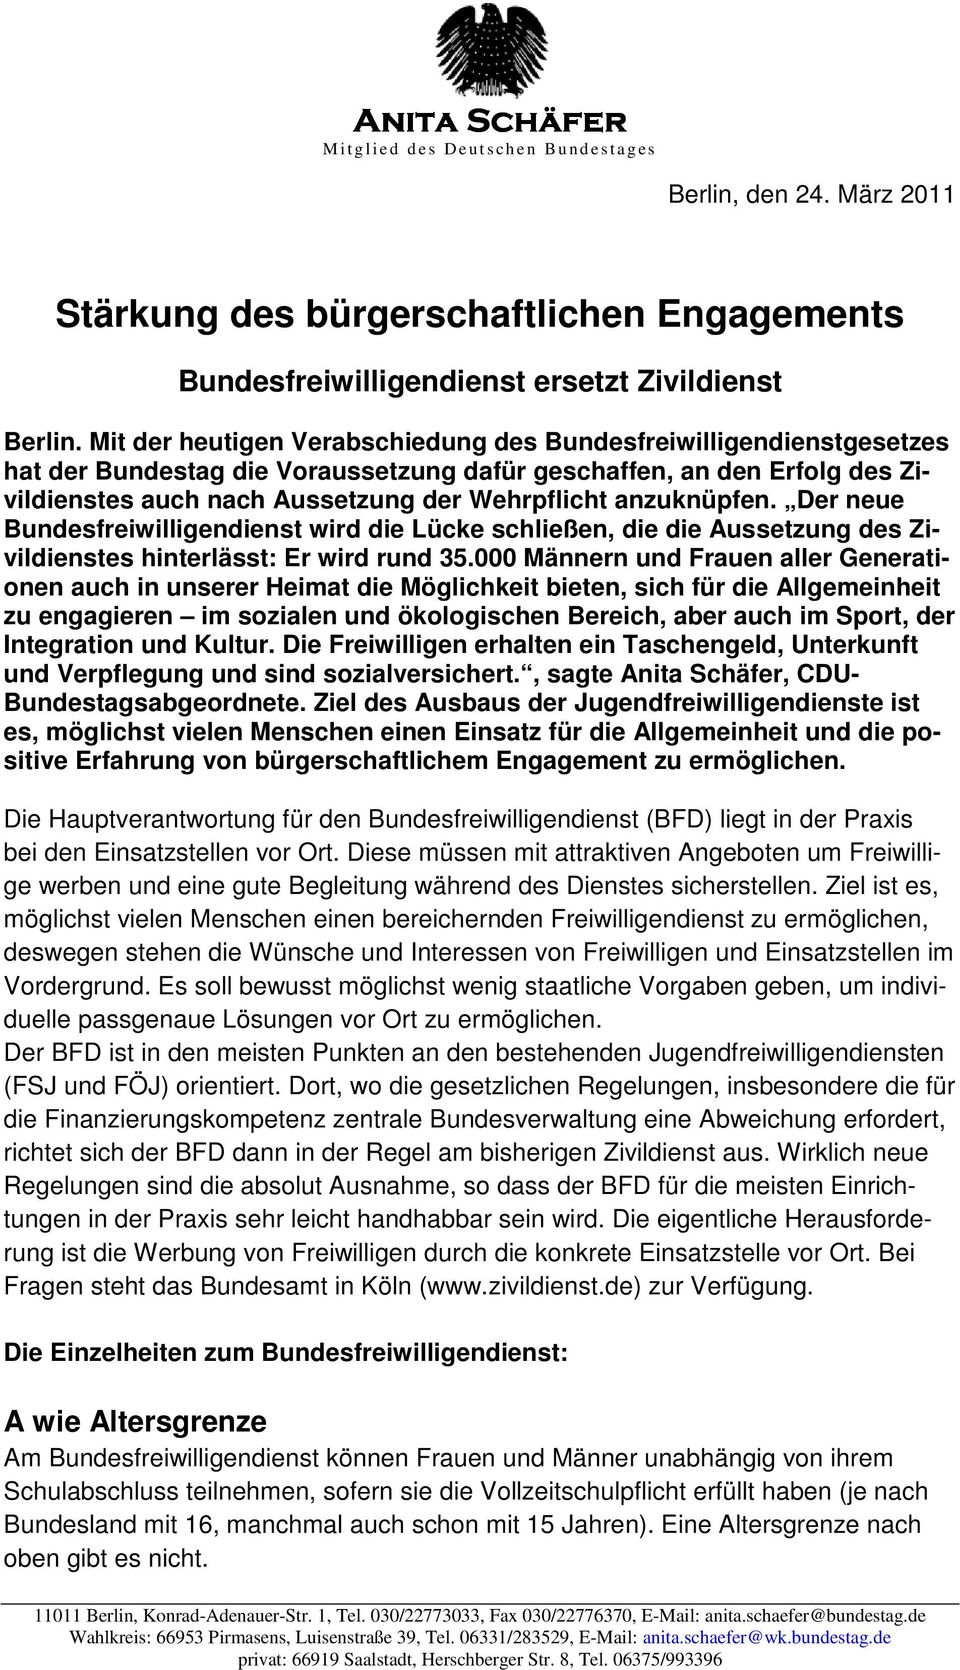 Mit der heutigen Verabschiedung des Bundesfreiwilligendienstgesetzes hat der Bundestag die Voraussetzung dafür geschaffen, an den Erfolg des Zivildienstes auch nach Aussetzung der Wehrpflicht